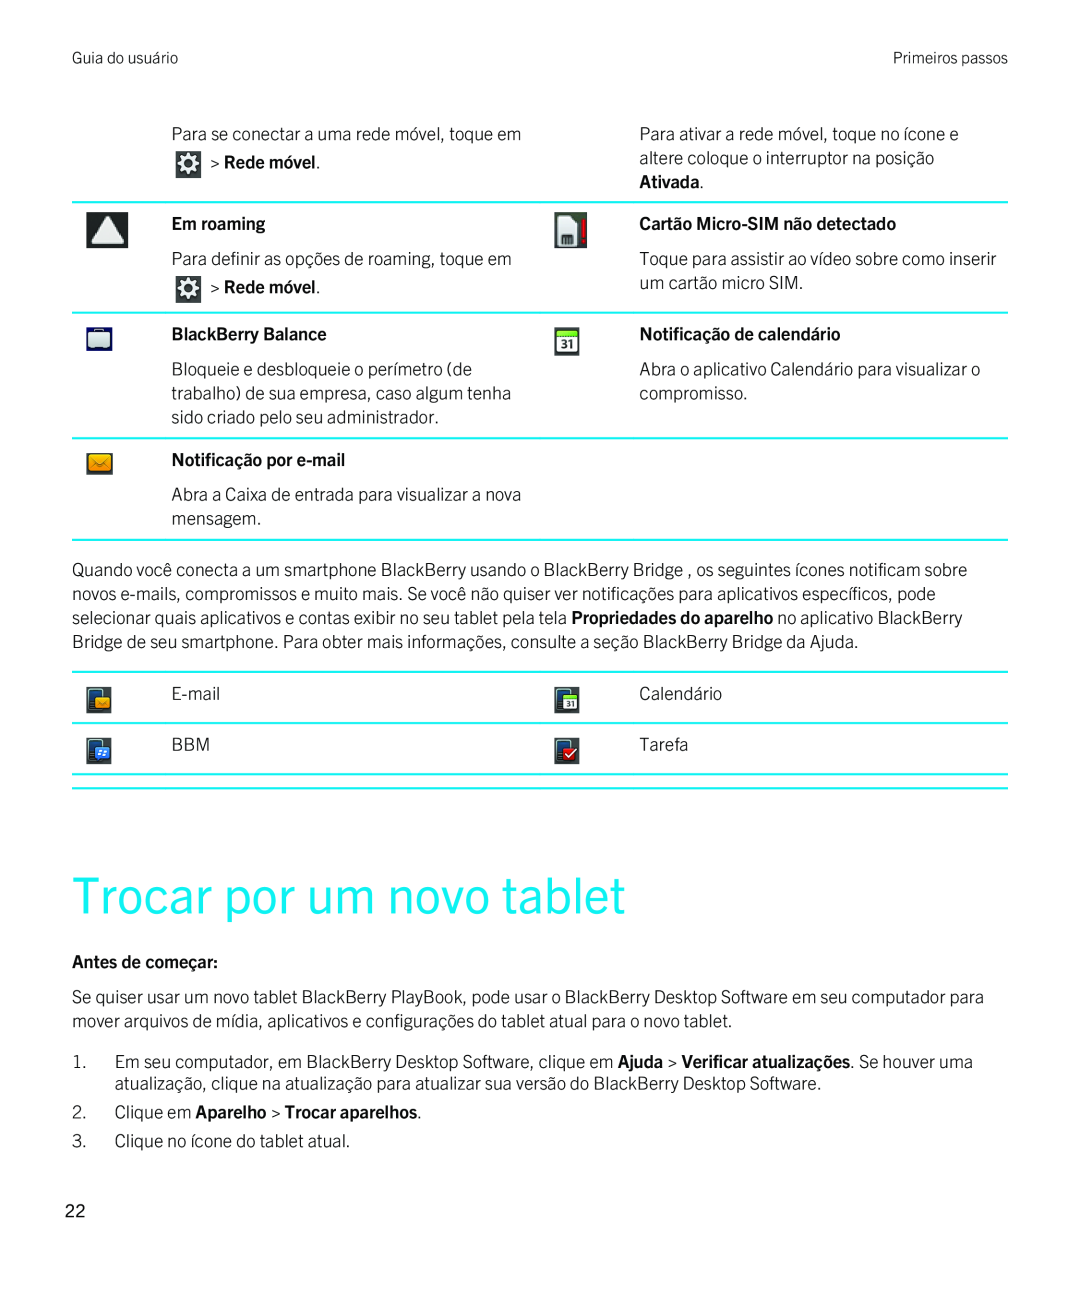 Blackberry 2.0.1 manual Trocar por um novo tablet, Rede móvel, Ativada, Em roaming, Cartão Micro-SIM não detectado 